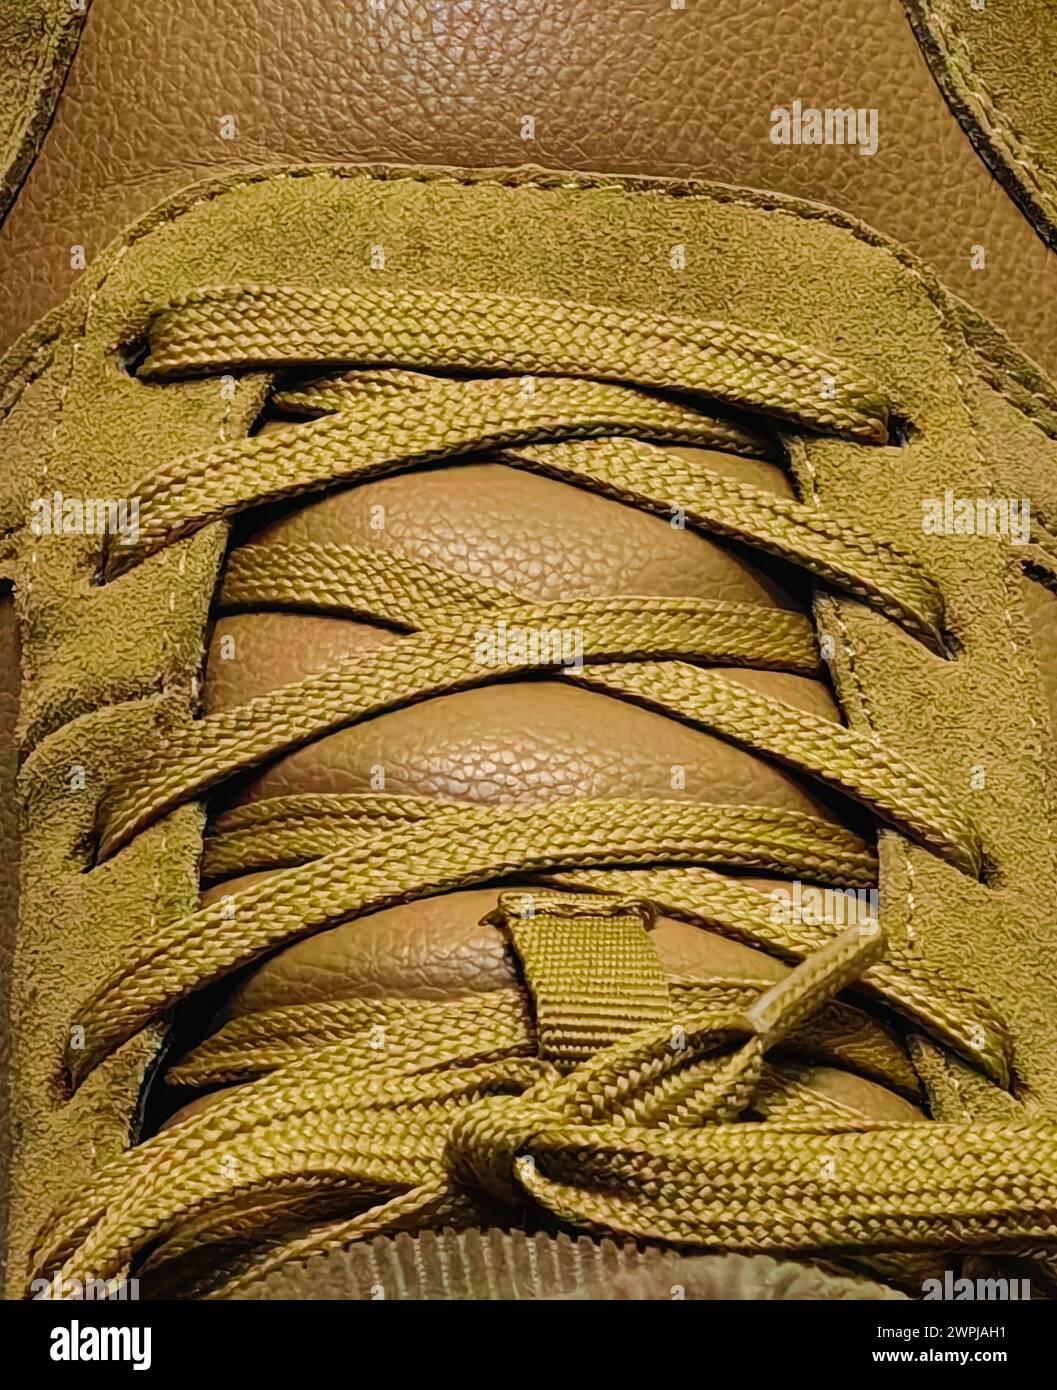 Eleganza da vicino. Scarpe da sneaker in pelle scamosciata marrone gialla. Foto Stock